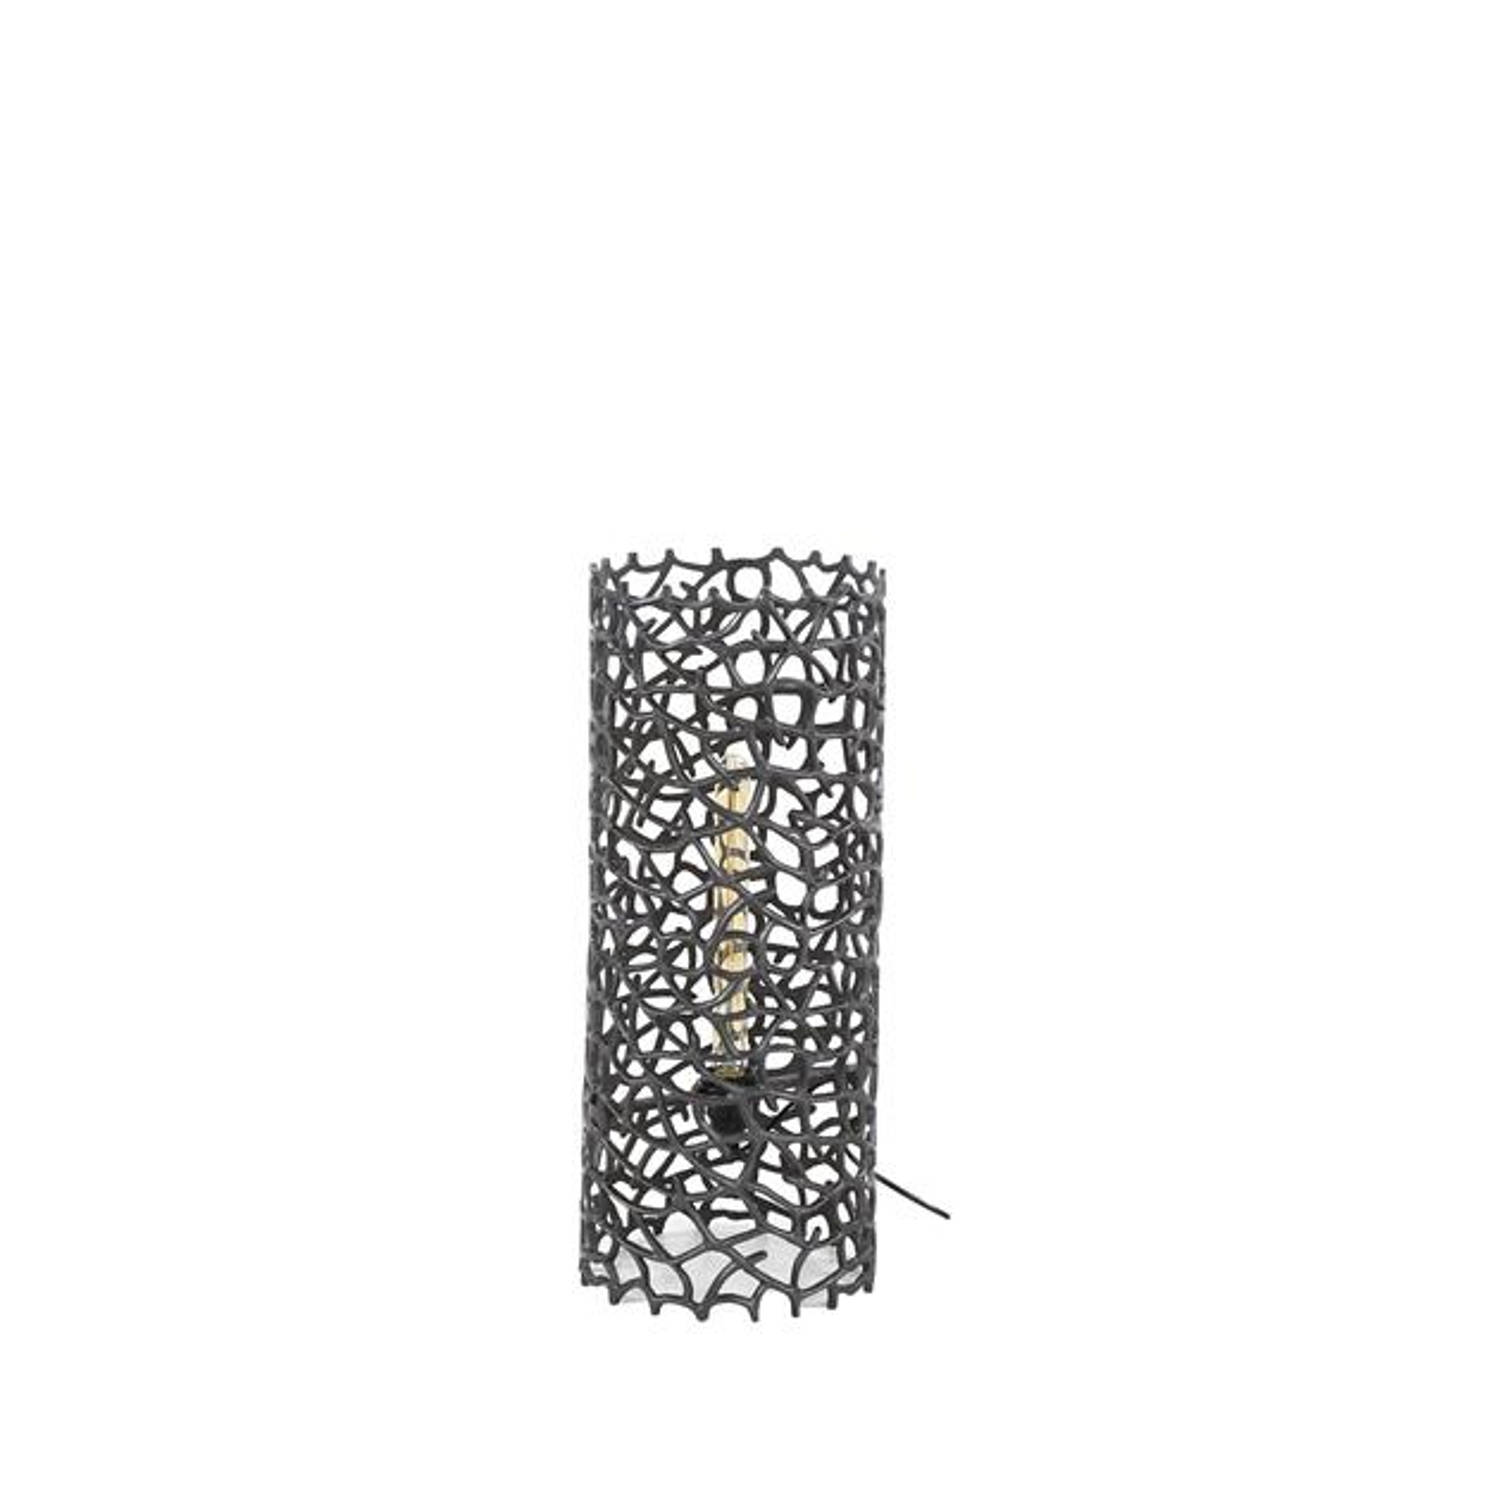 Giga Meubel Vloerlamp Cilinder Zwart Aluminium 25x25x61cm